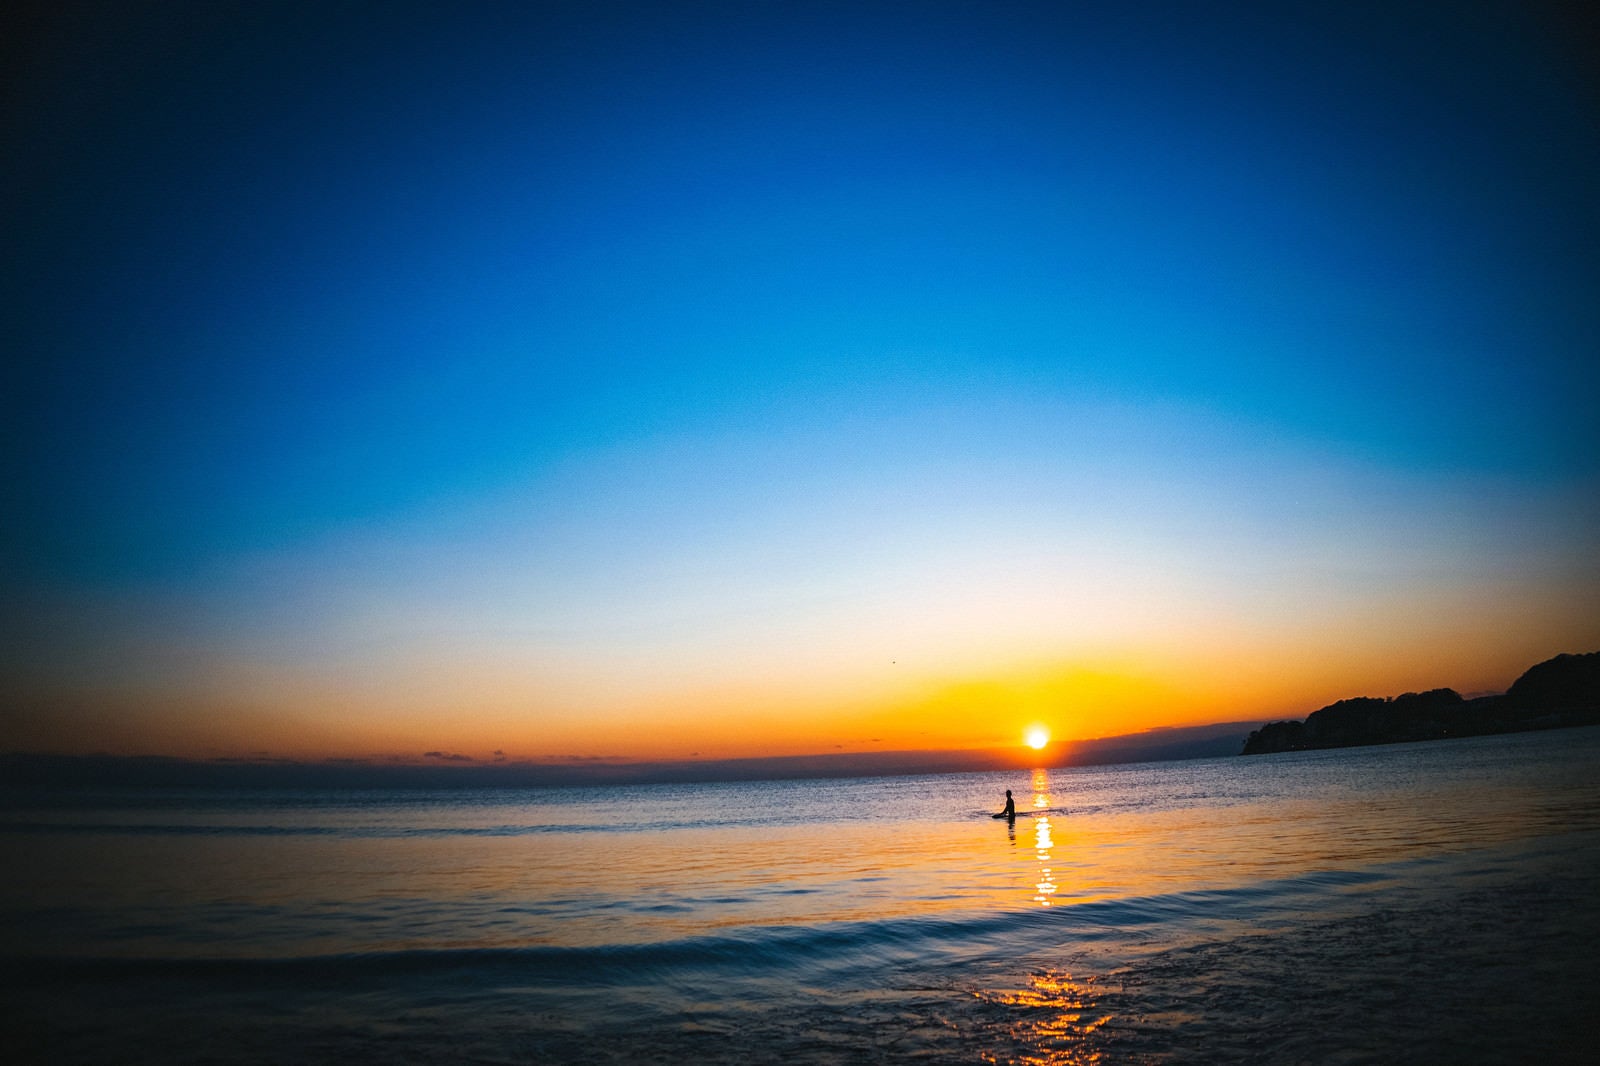 「夕日の焼けた海に浮かぶサーファー」の写真